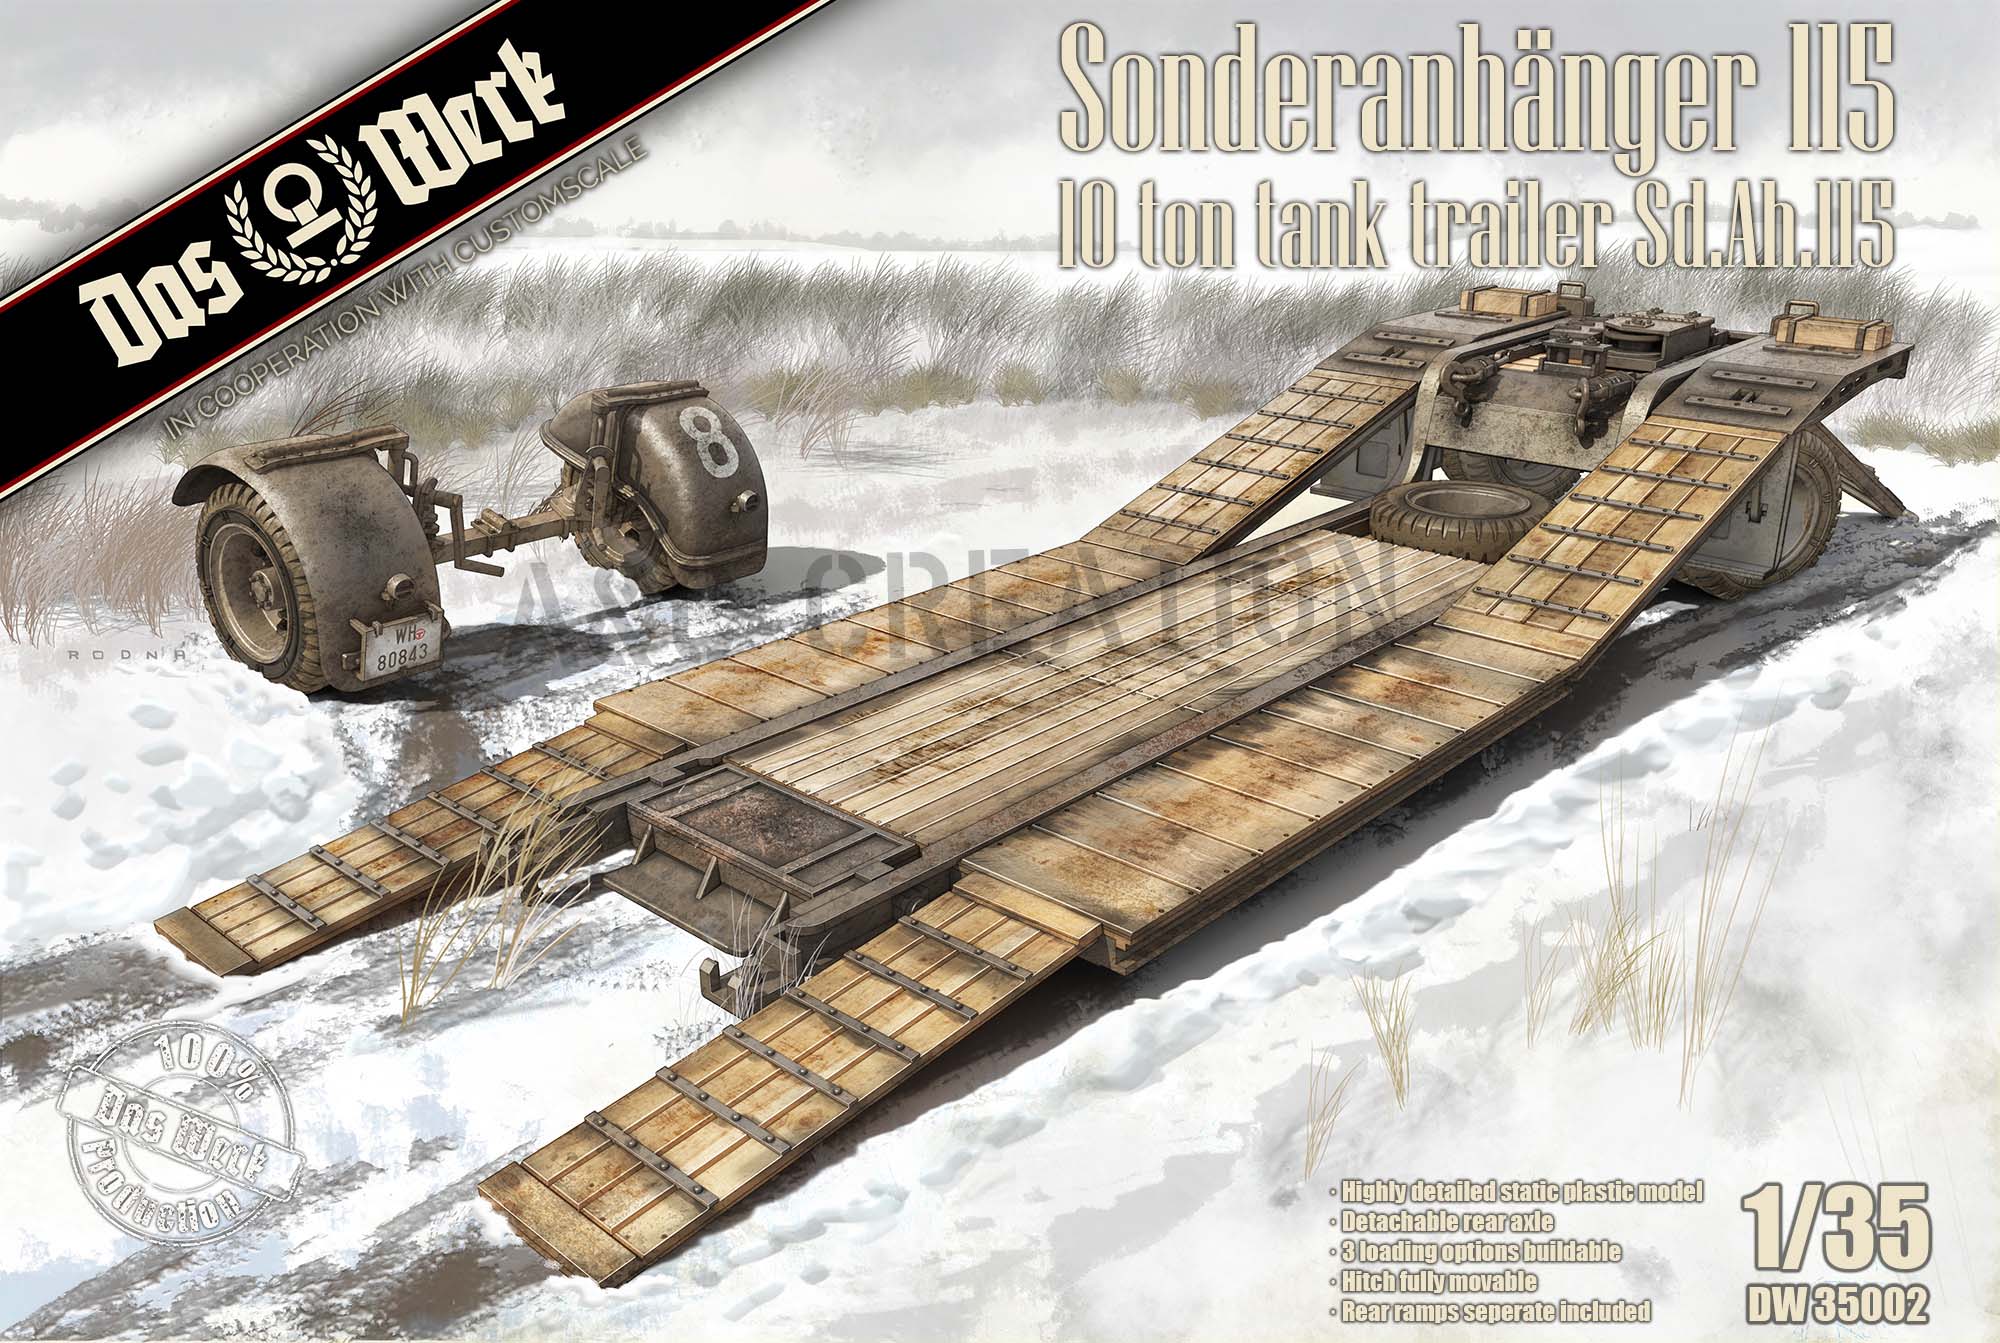 DW35002 Sonderanhänger 115 - 10t Tank Trailer Sd.Ah.115